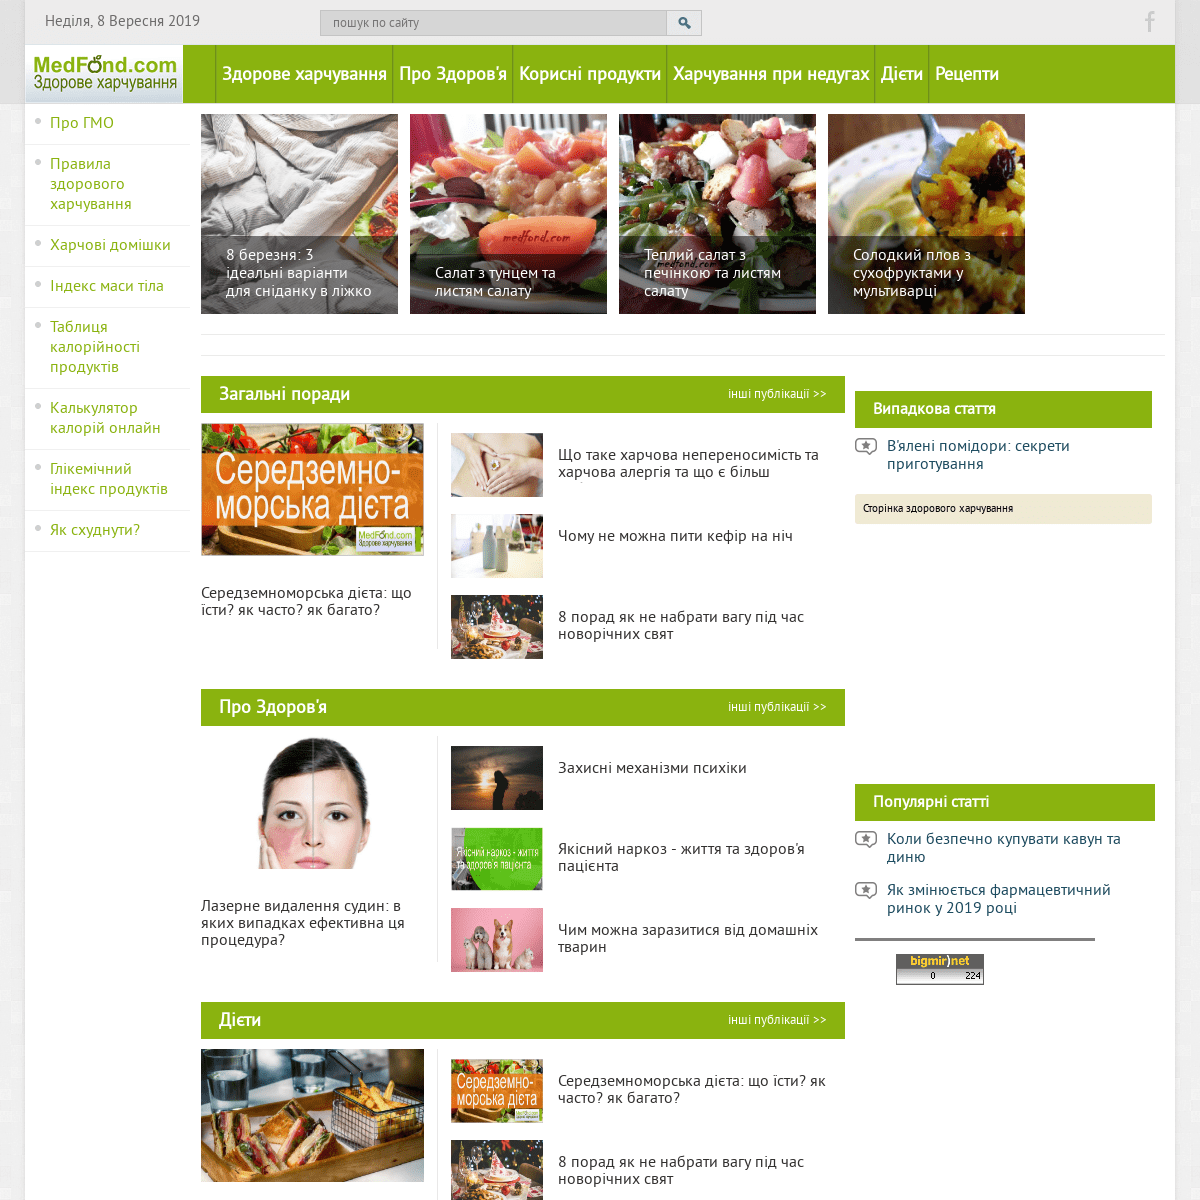 Medfond.com - сторінка здорового харчування